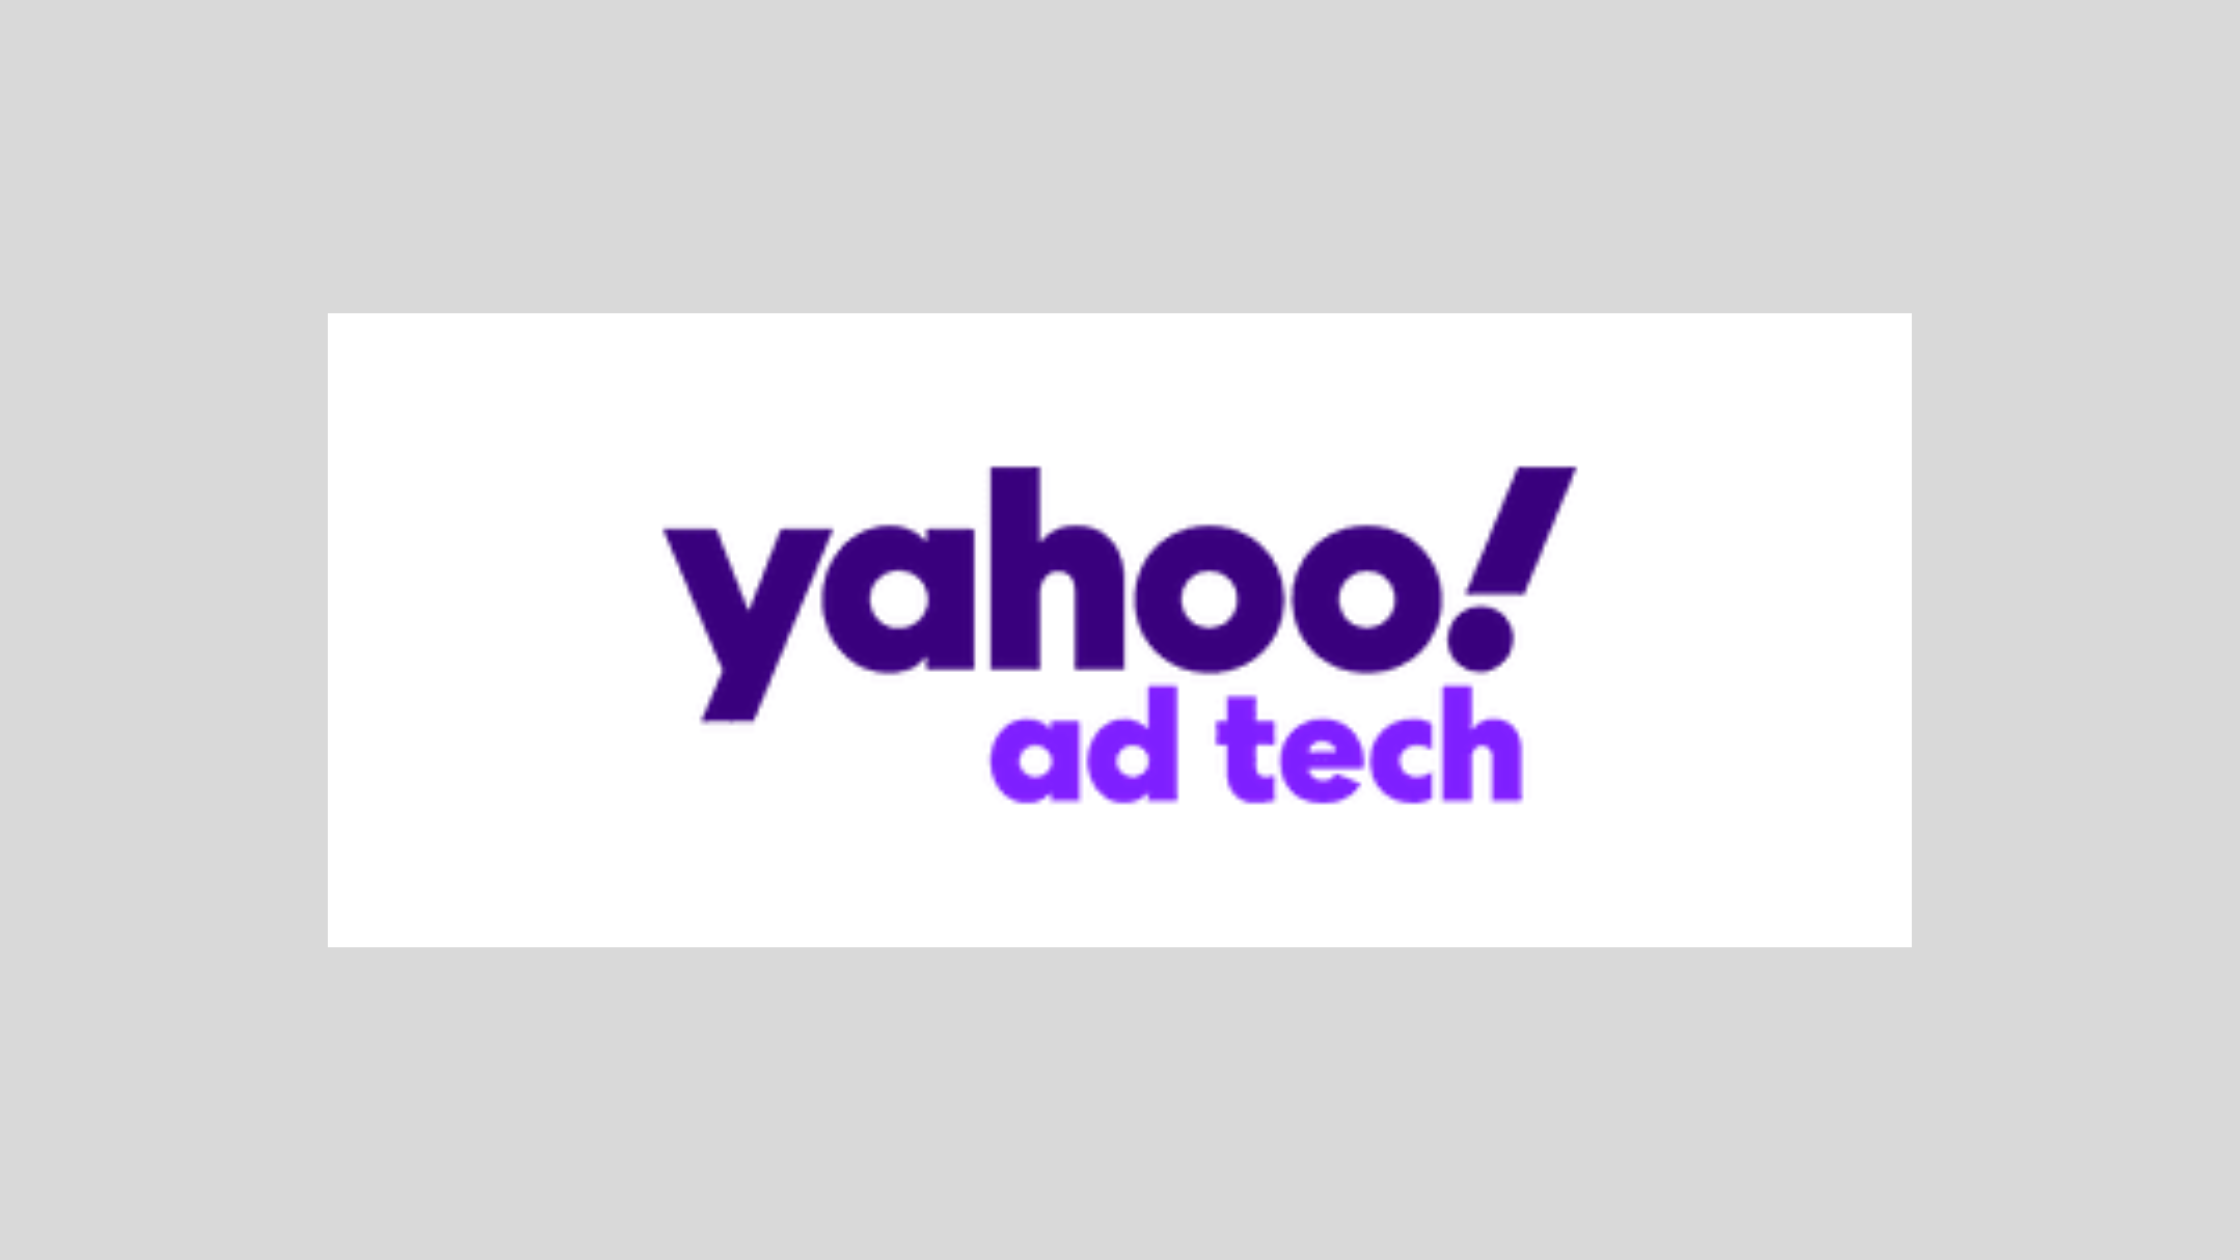 Yahoo Ad Tech